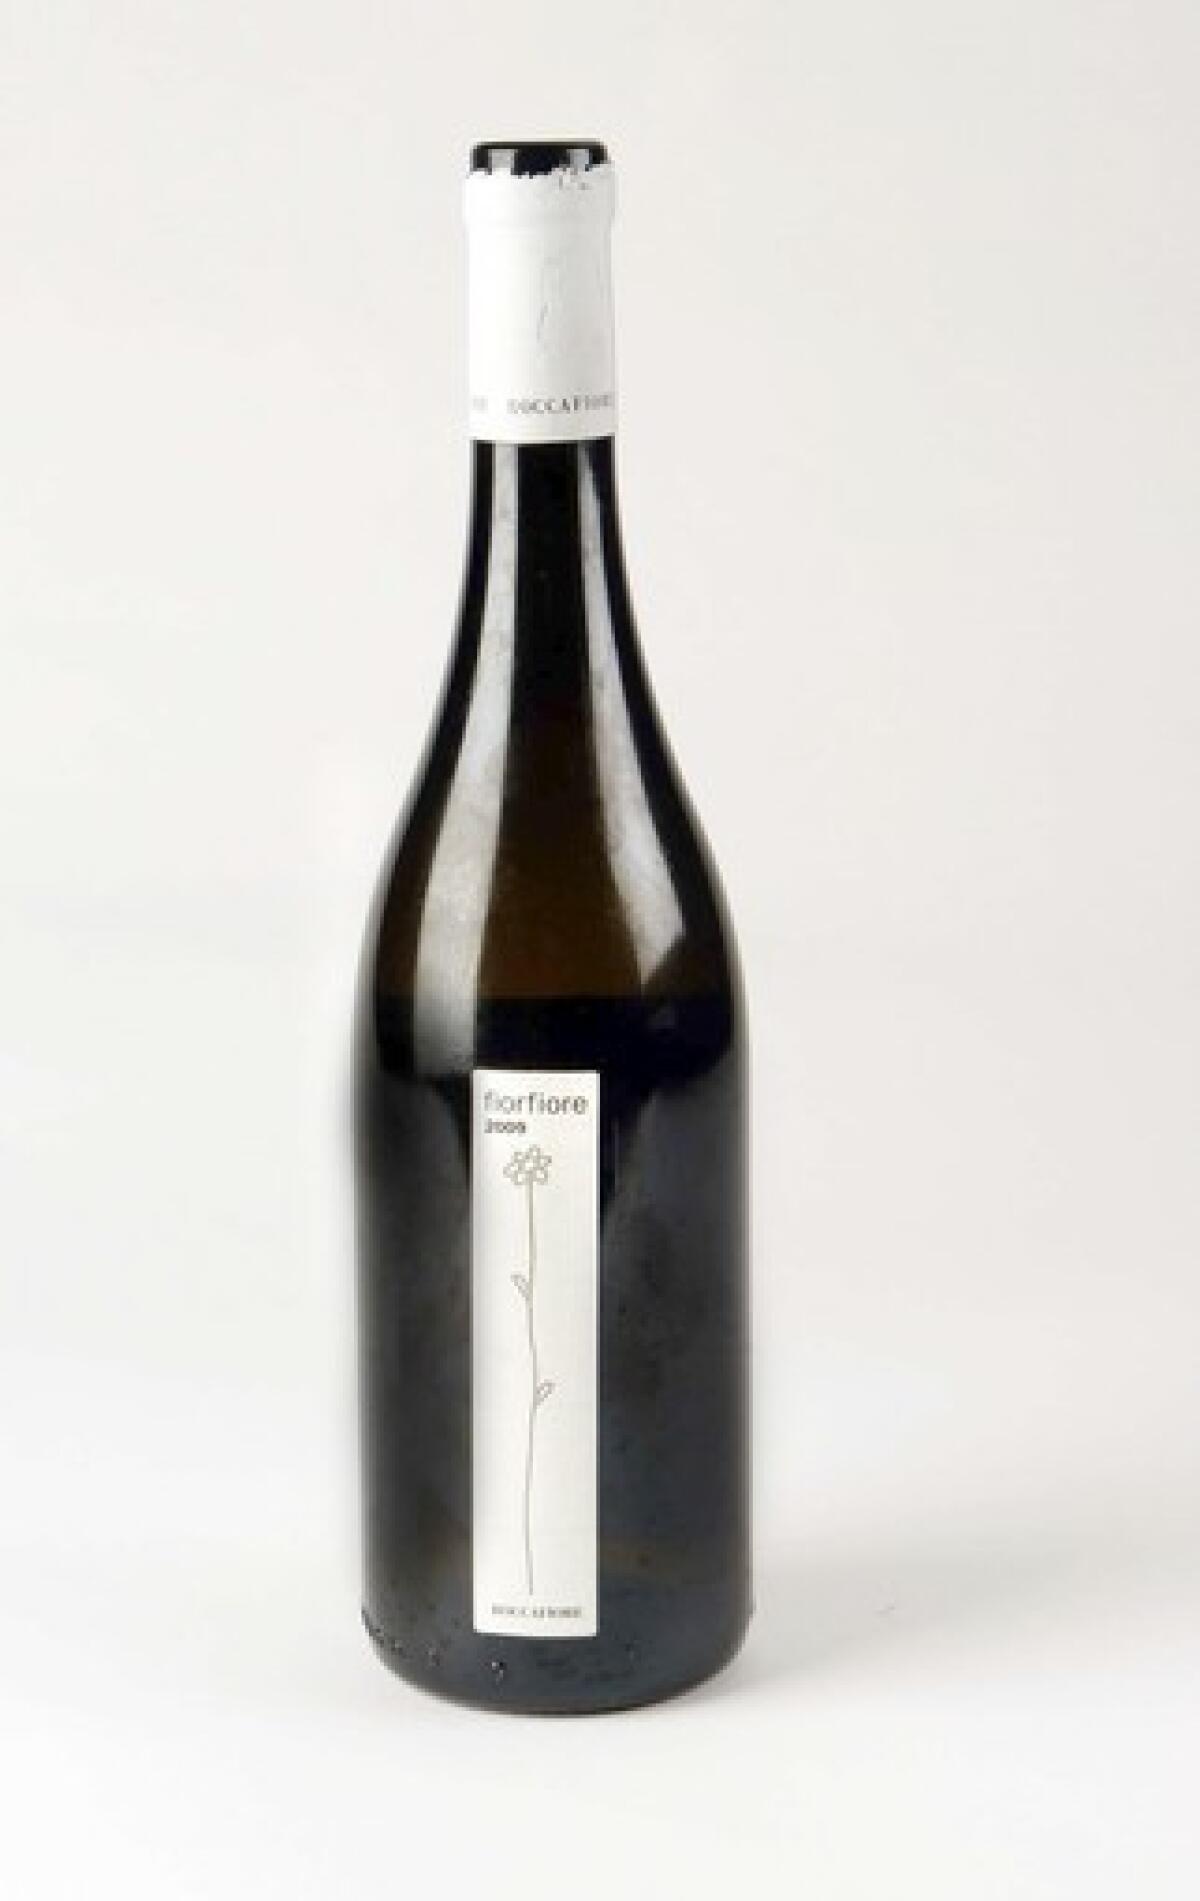 Fiorfiore White Wine 2009.